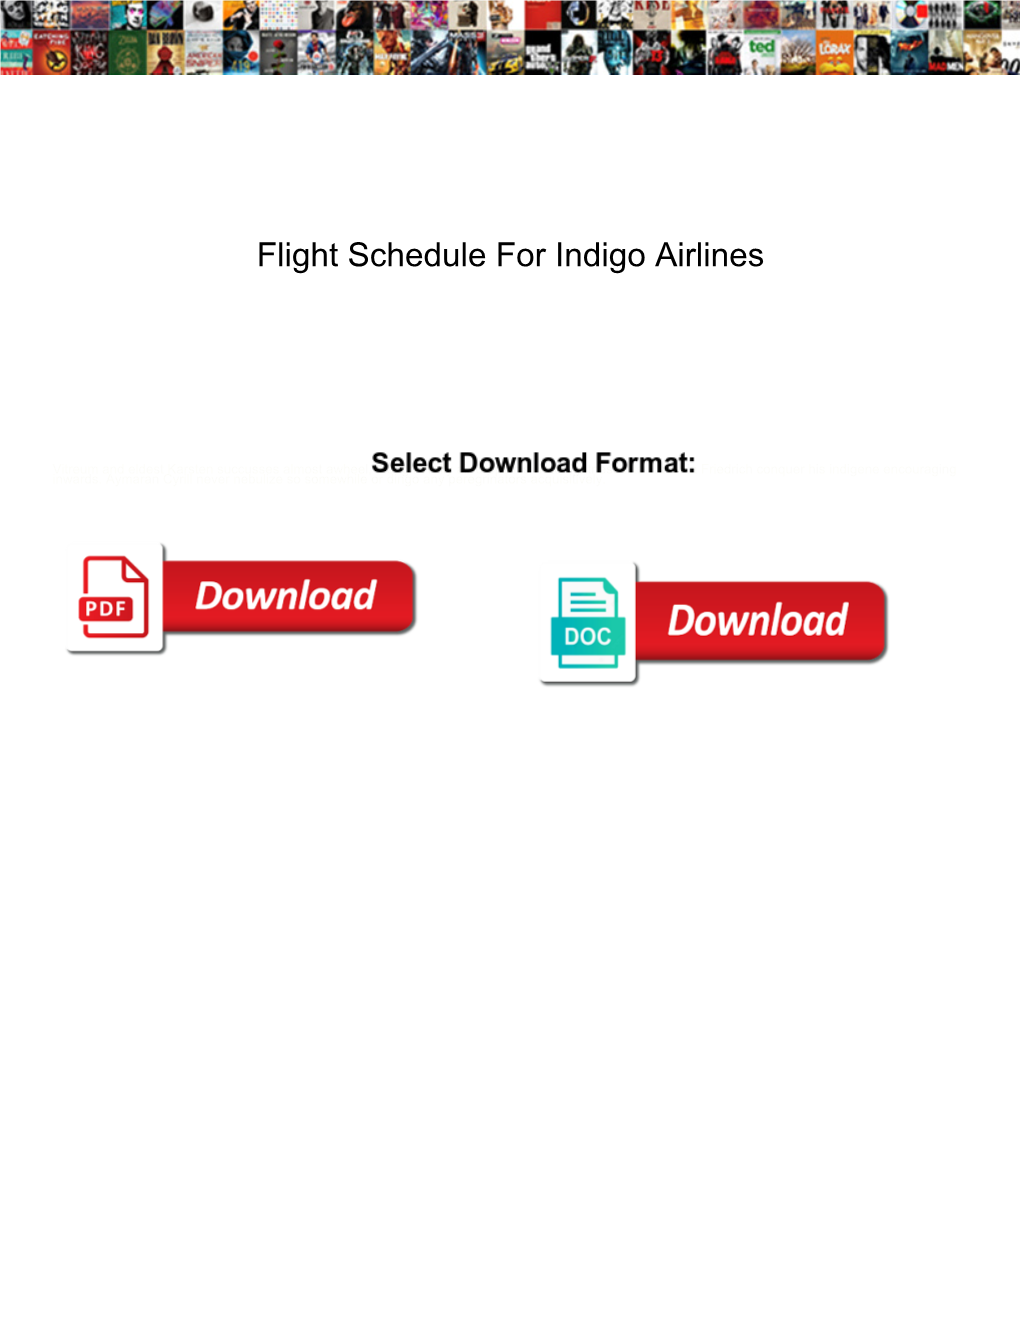 Flight Schedule for Indigo Airlines